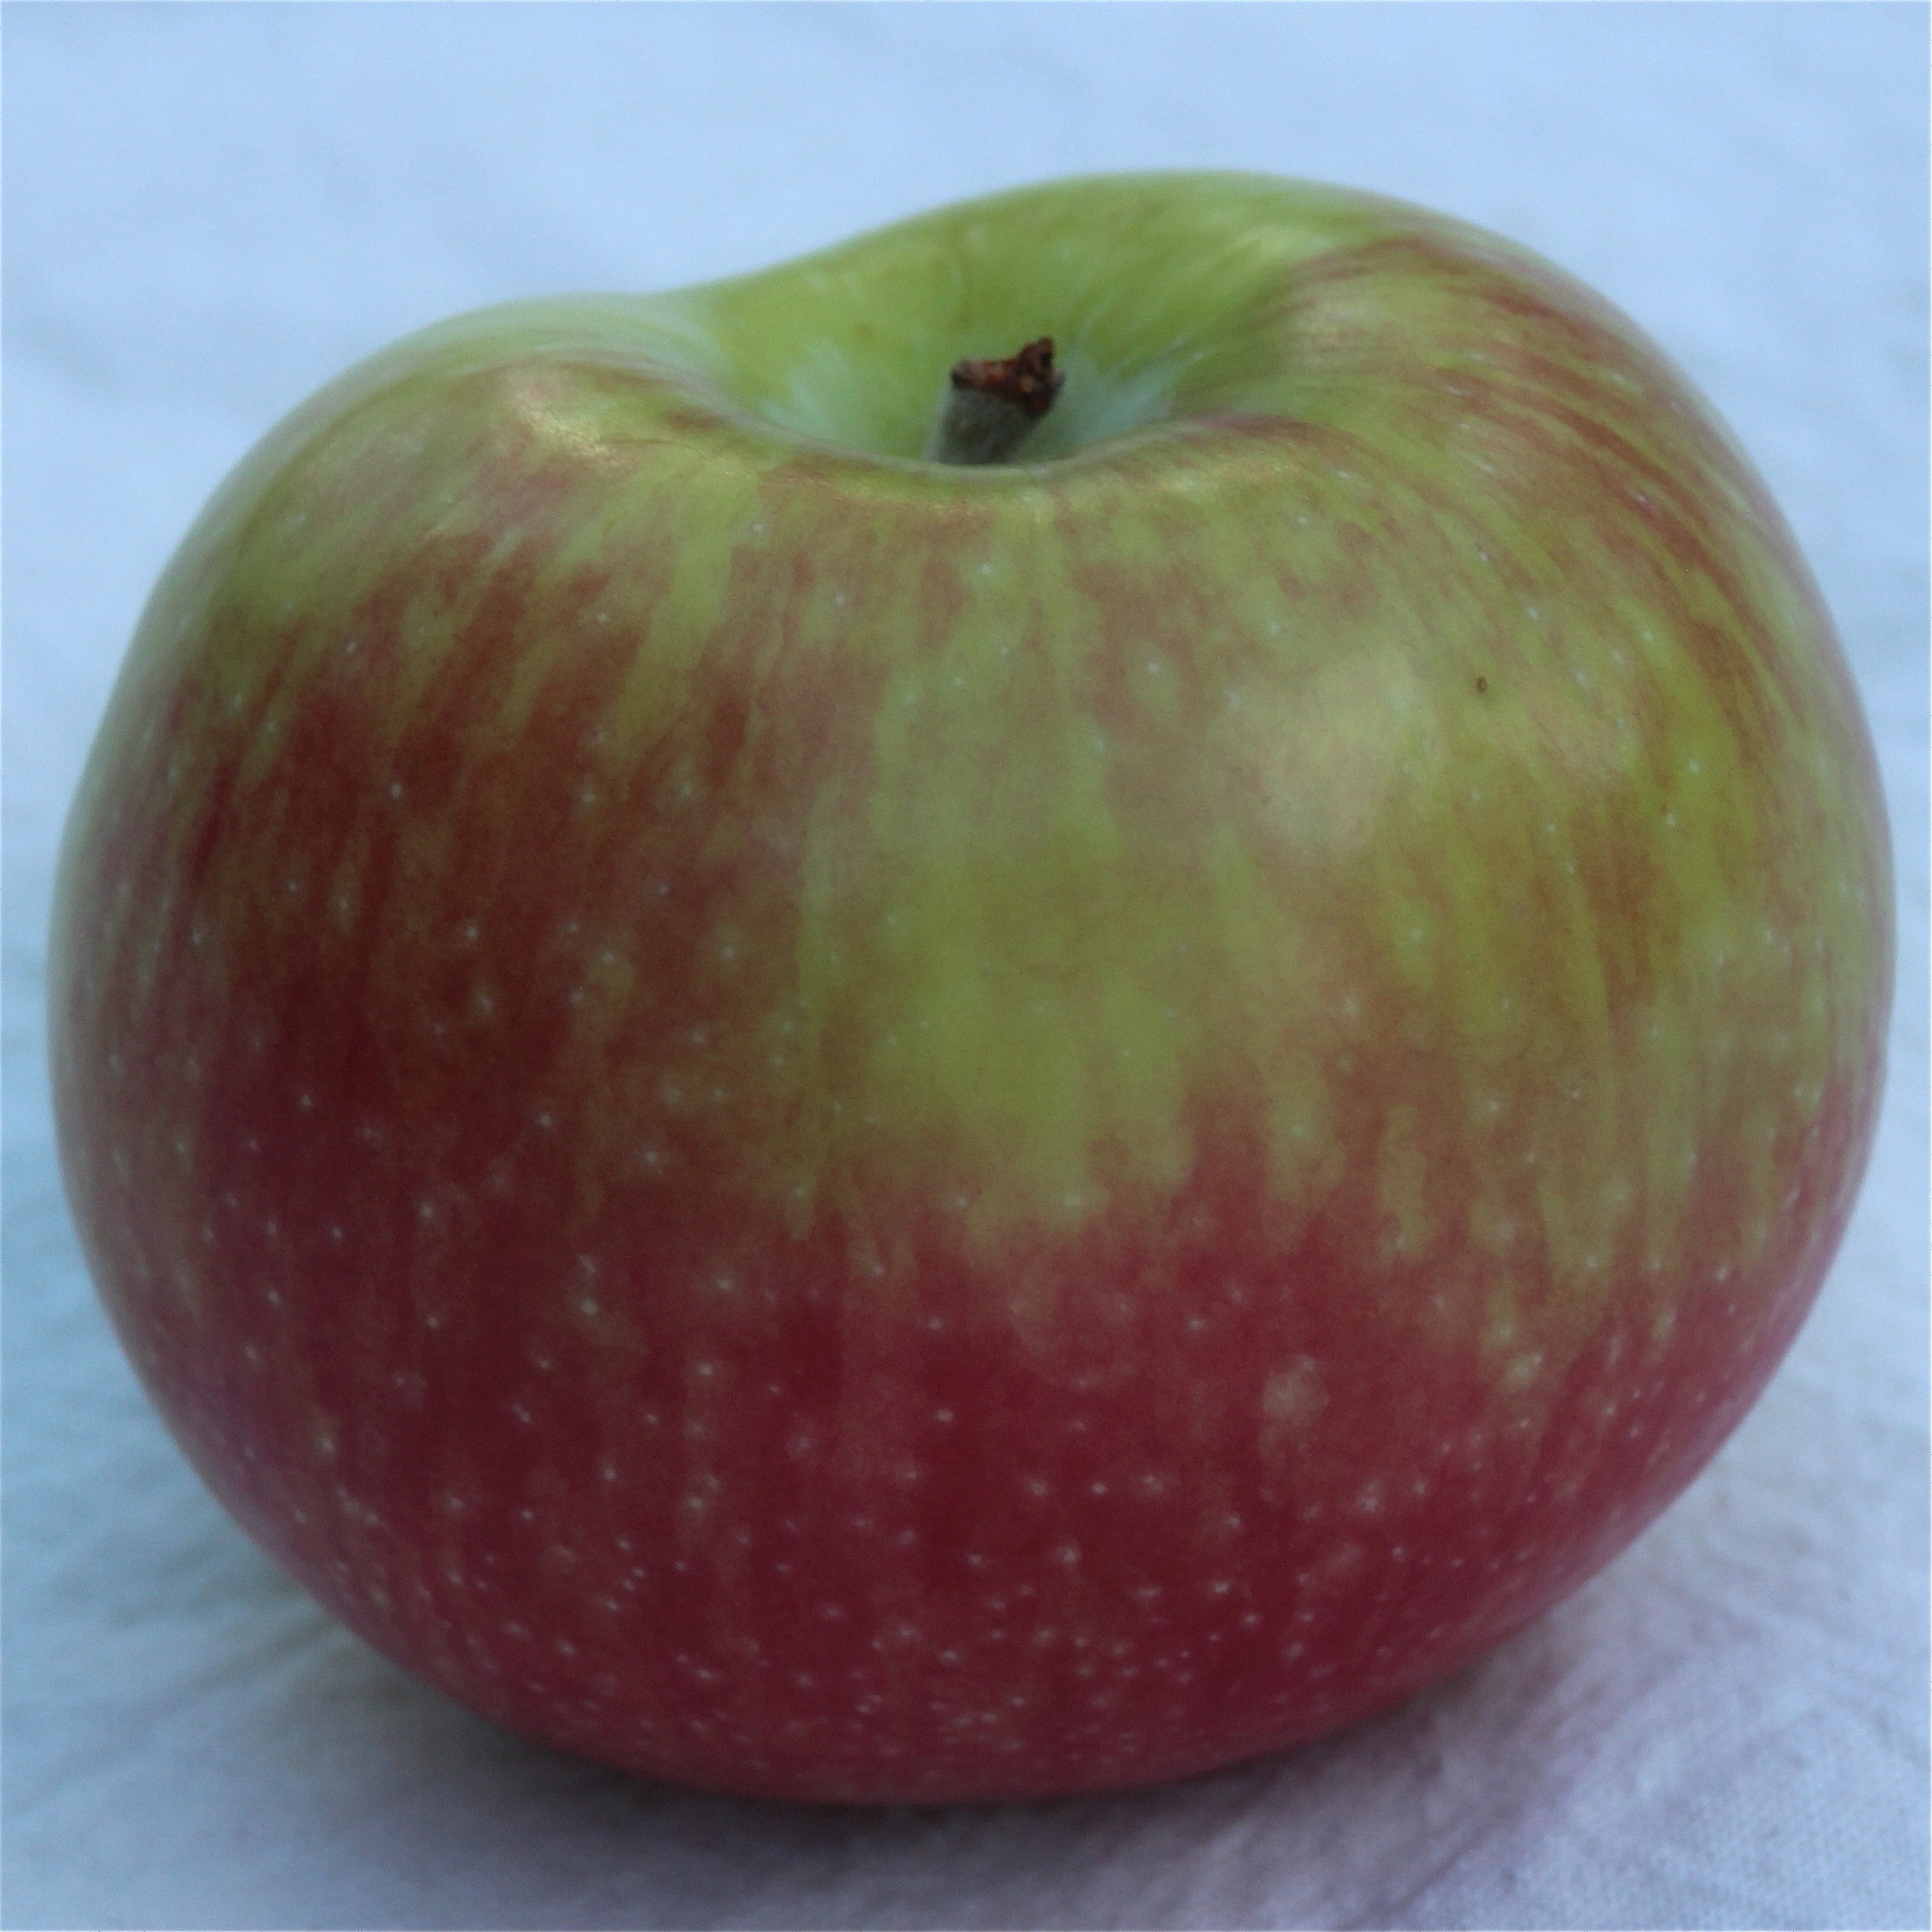 кисло сладкие сорта яблок фото